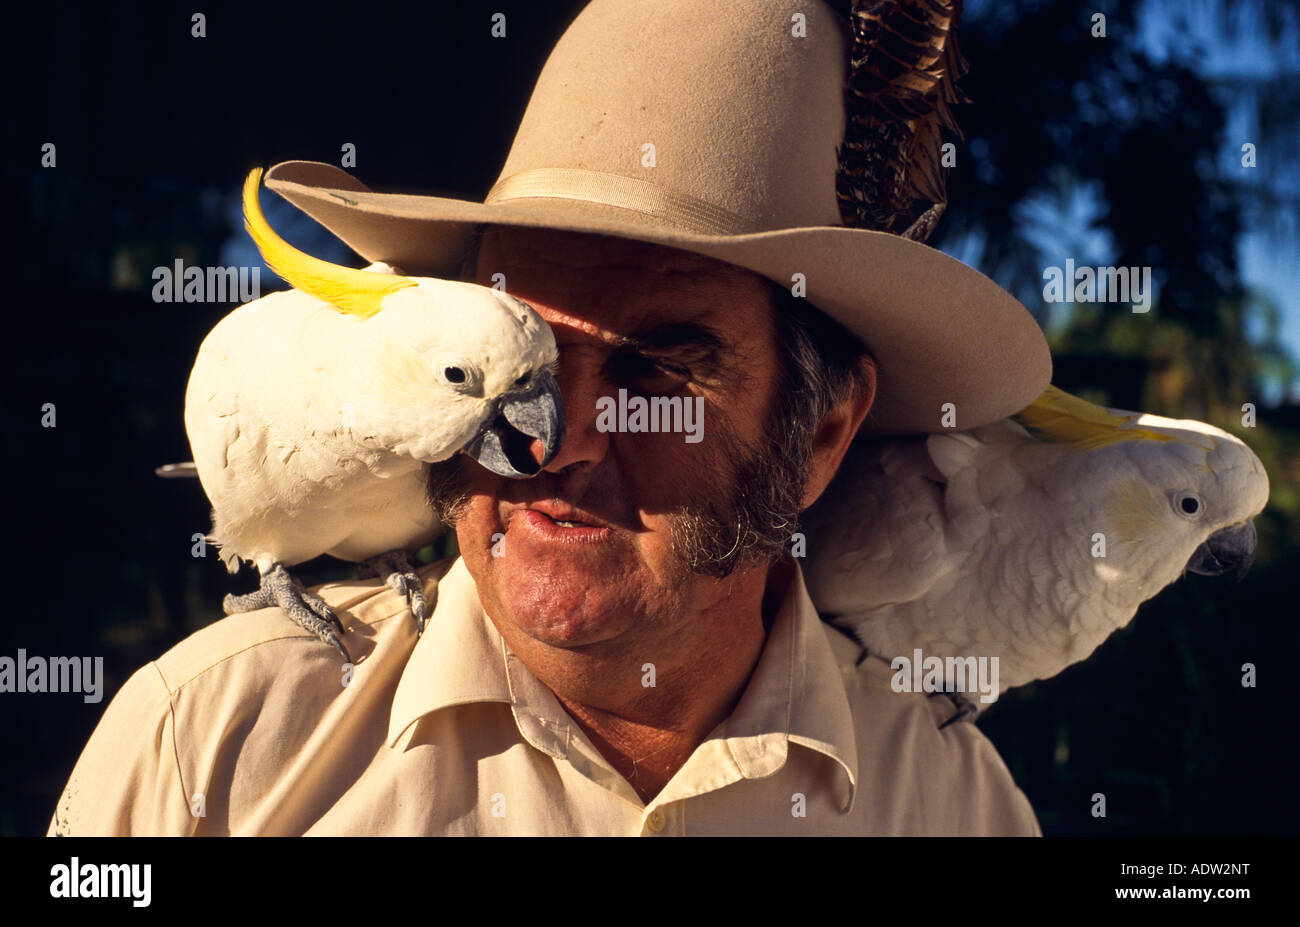 Homme et animal cacatoès Australie Banque D'Images